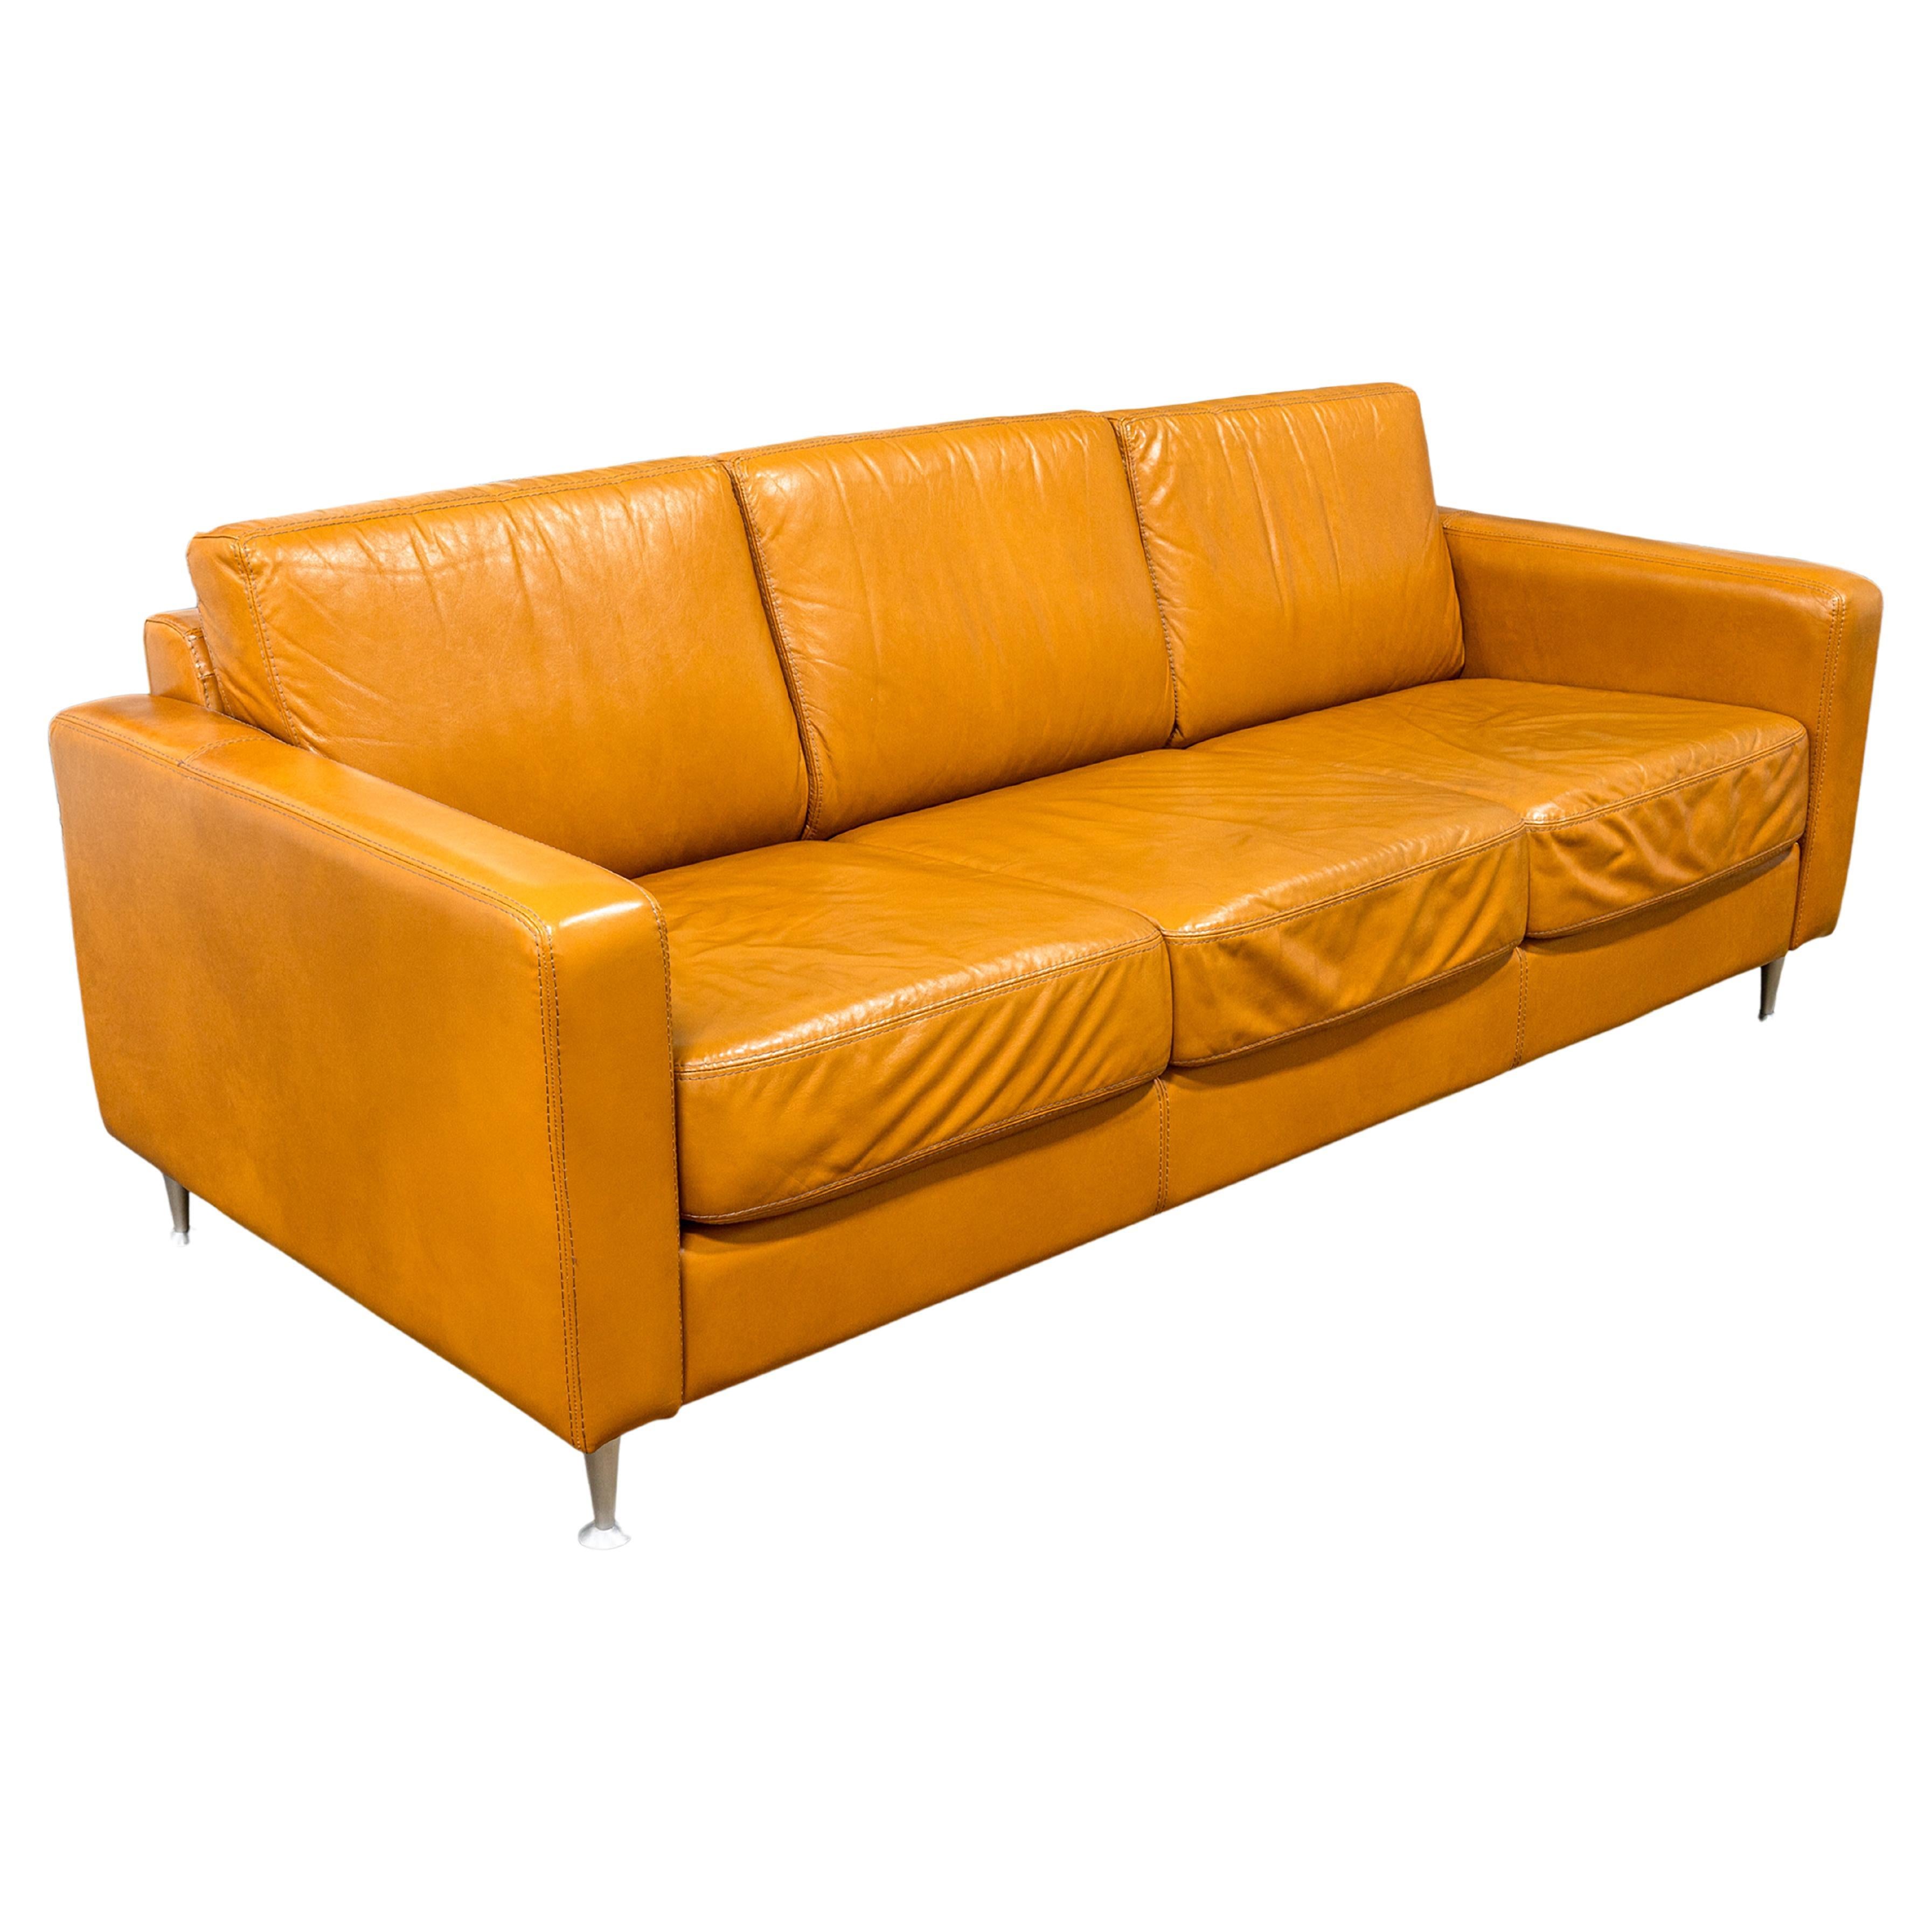 Contemporary Cognac Leather Sofa by Giuliano Giusta for Collezione Divani